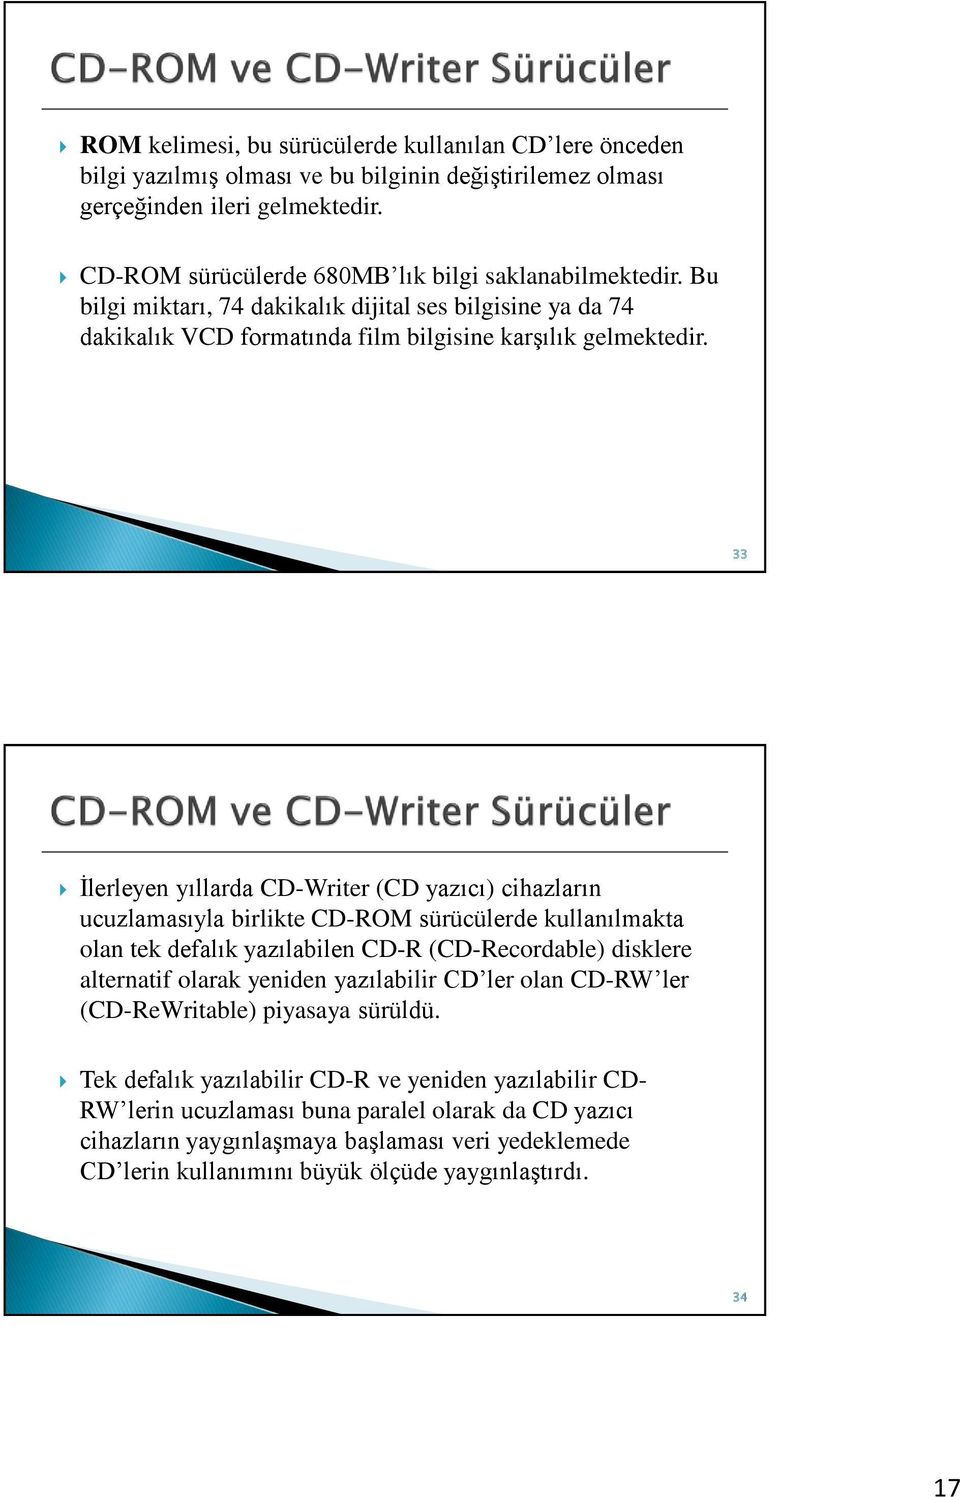 33 İlerleyen yıllarda CD-Writer (CD yazıcı) cihazların ucuzlamasıyla birlikte CD-ROM sürücülerde kullanılmakta olan tek defalık yazılabilen CD-R (CD-Recordable) disklere alternatif olarak yeniden